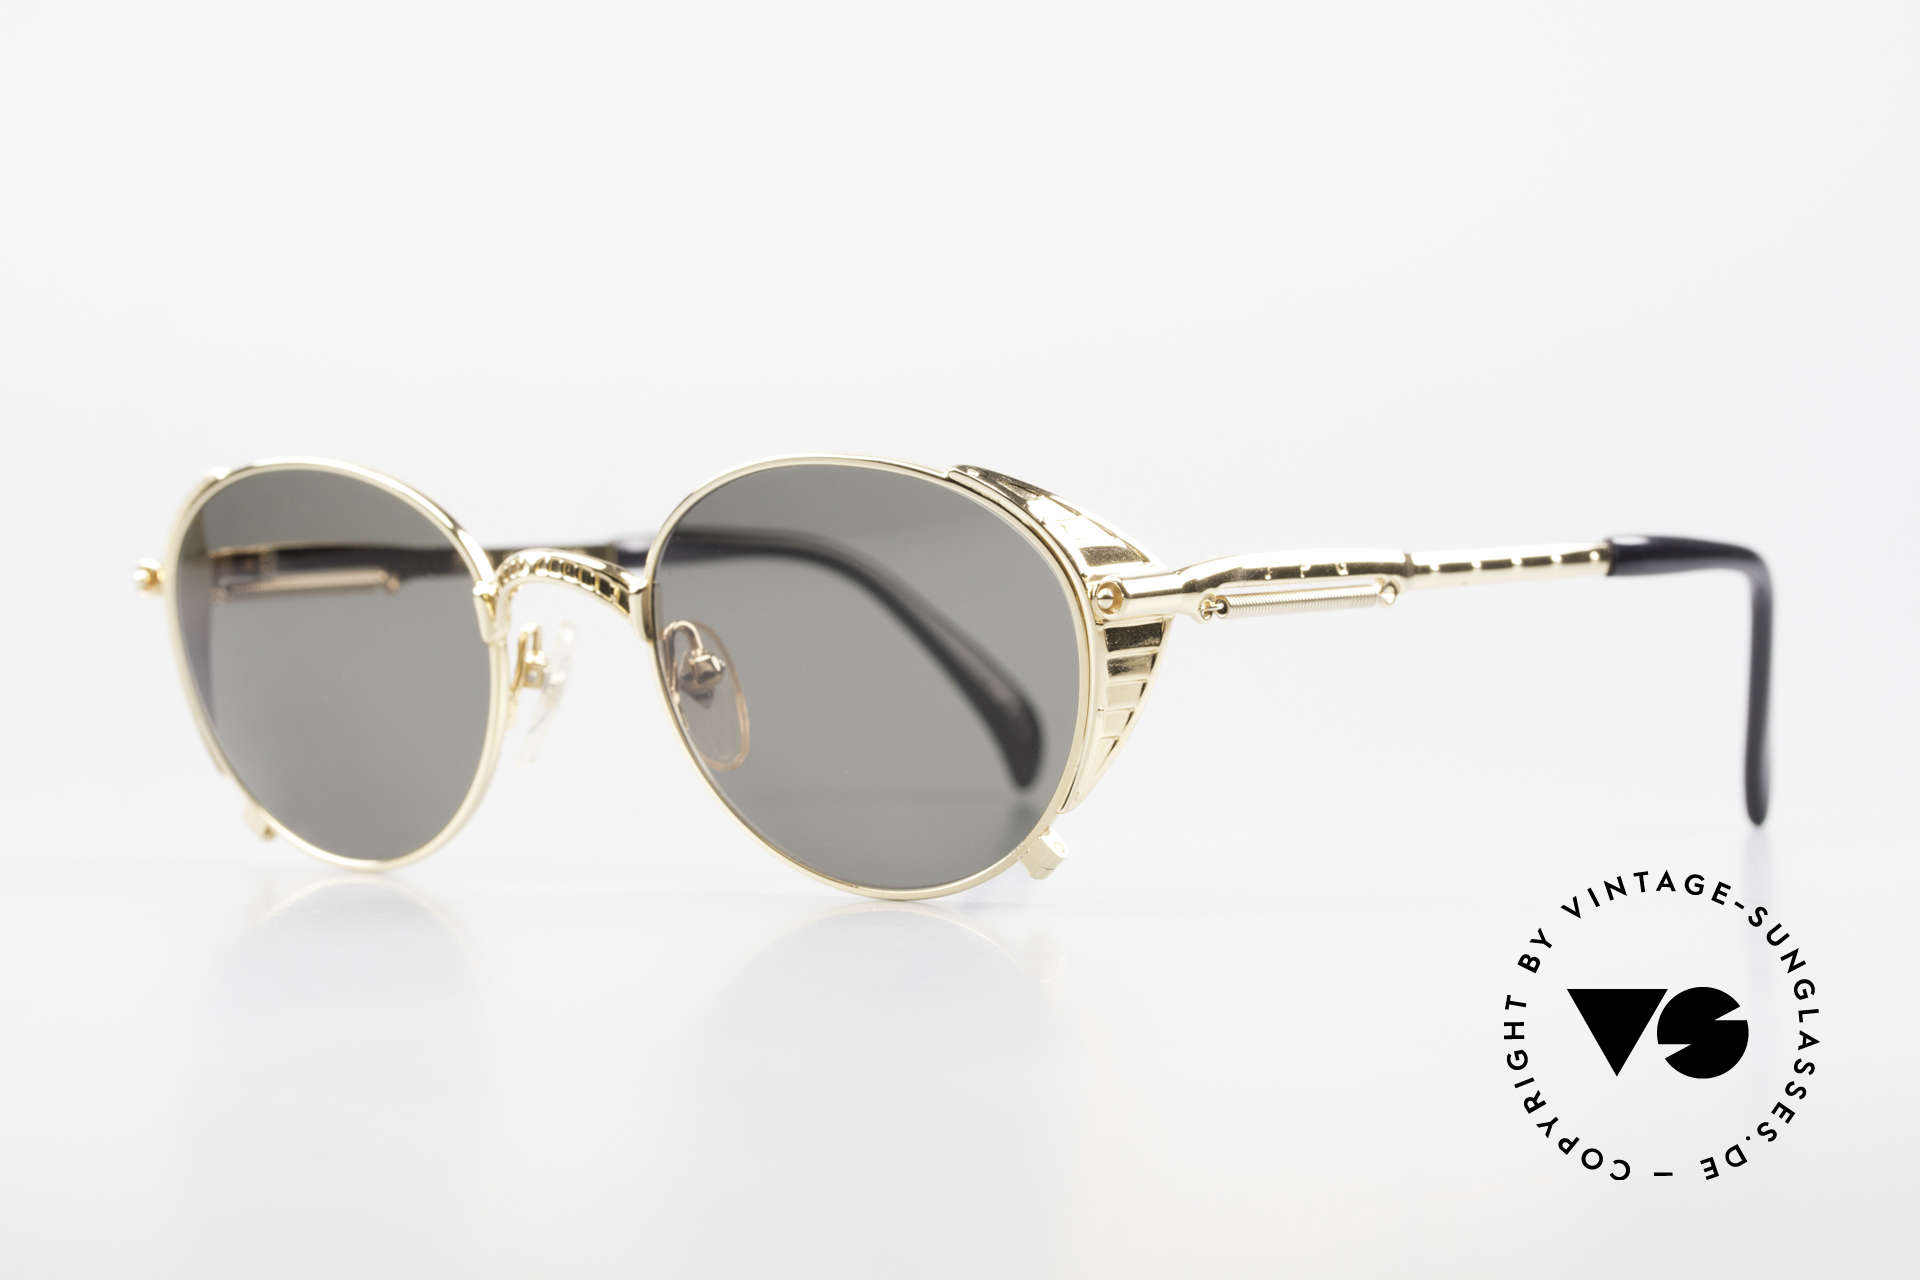 Jean Paul Gaultier 56-4174 Steampunk Sonnenbrille 90er, industrial Design oder auch "Steampunk-Brille", Passend für Herren und Damen